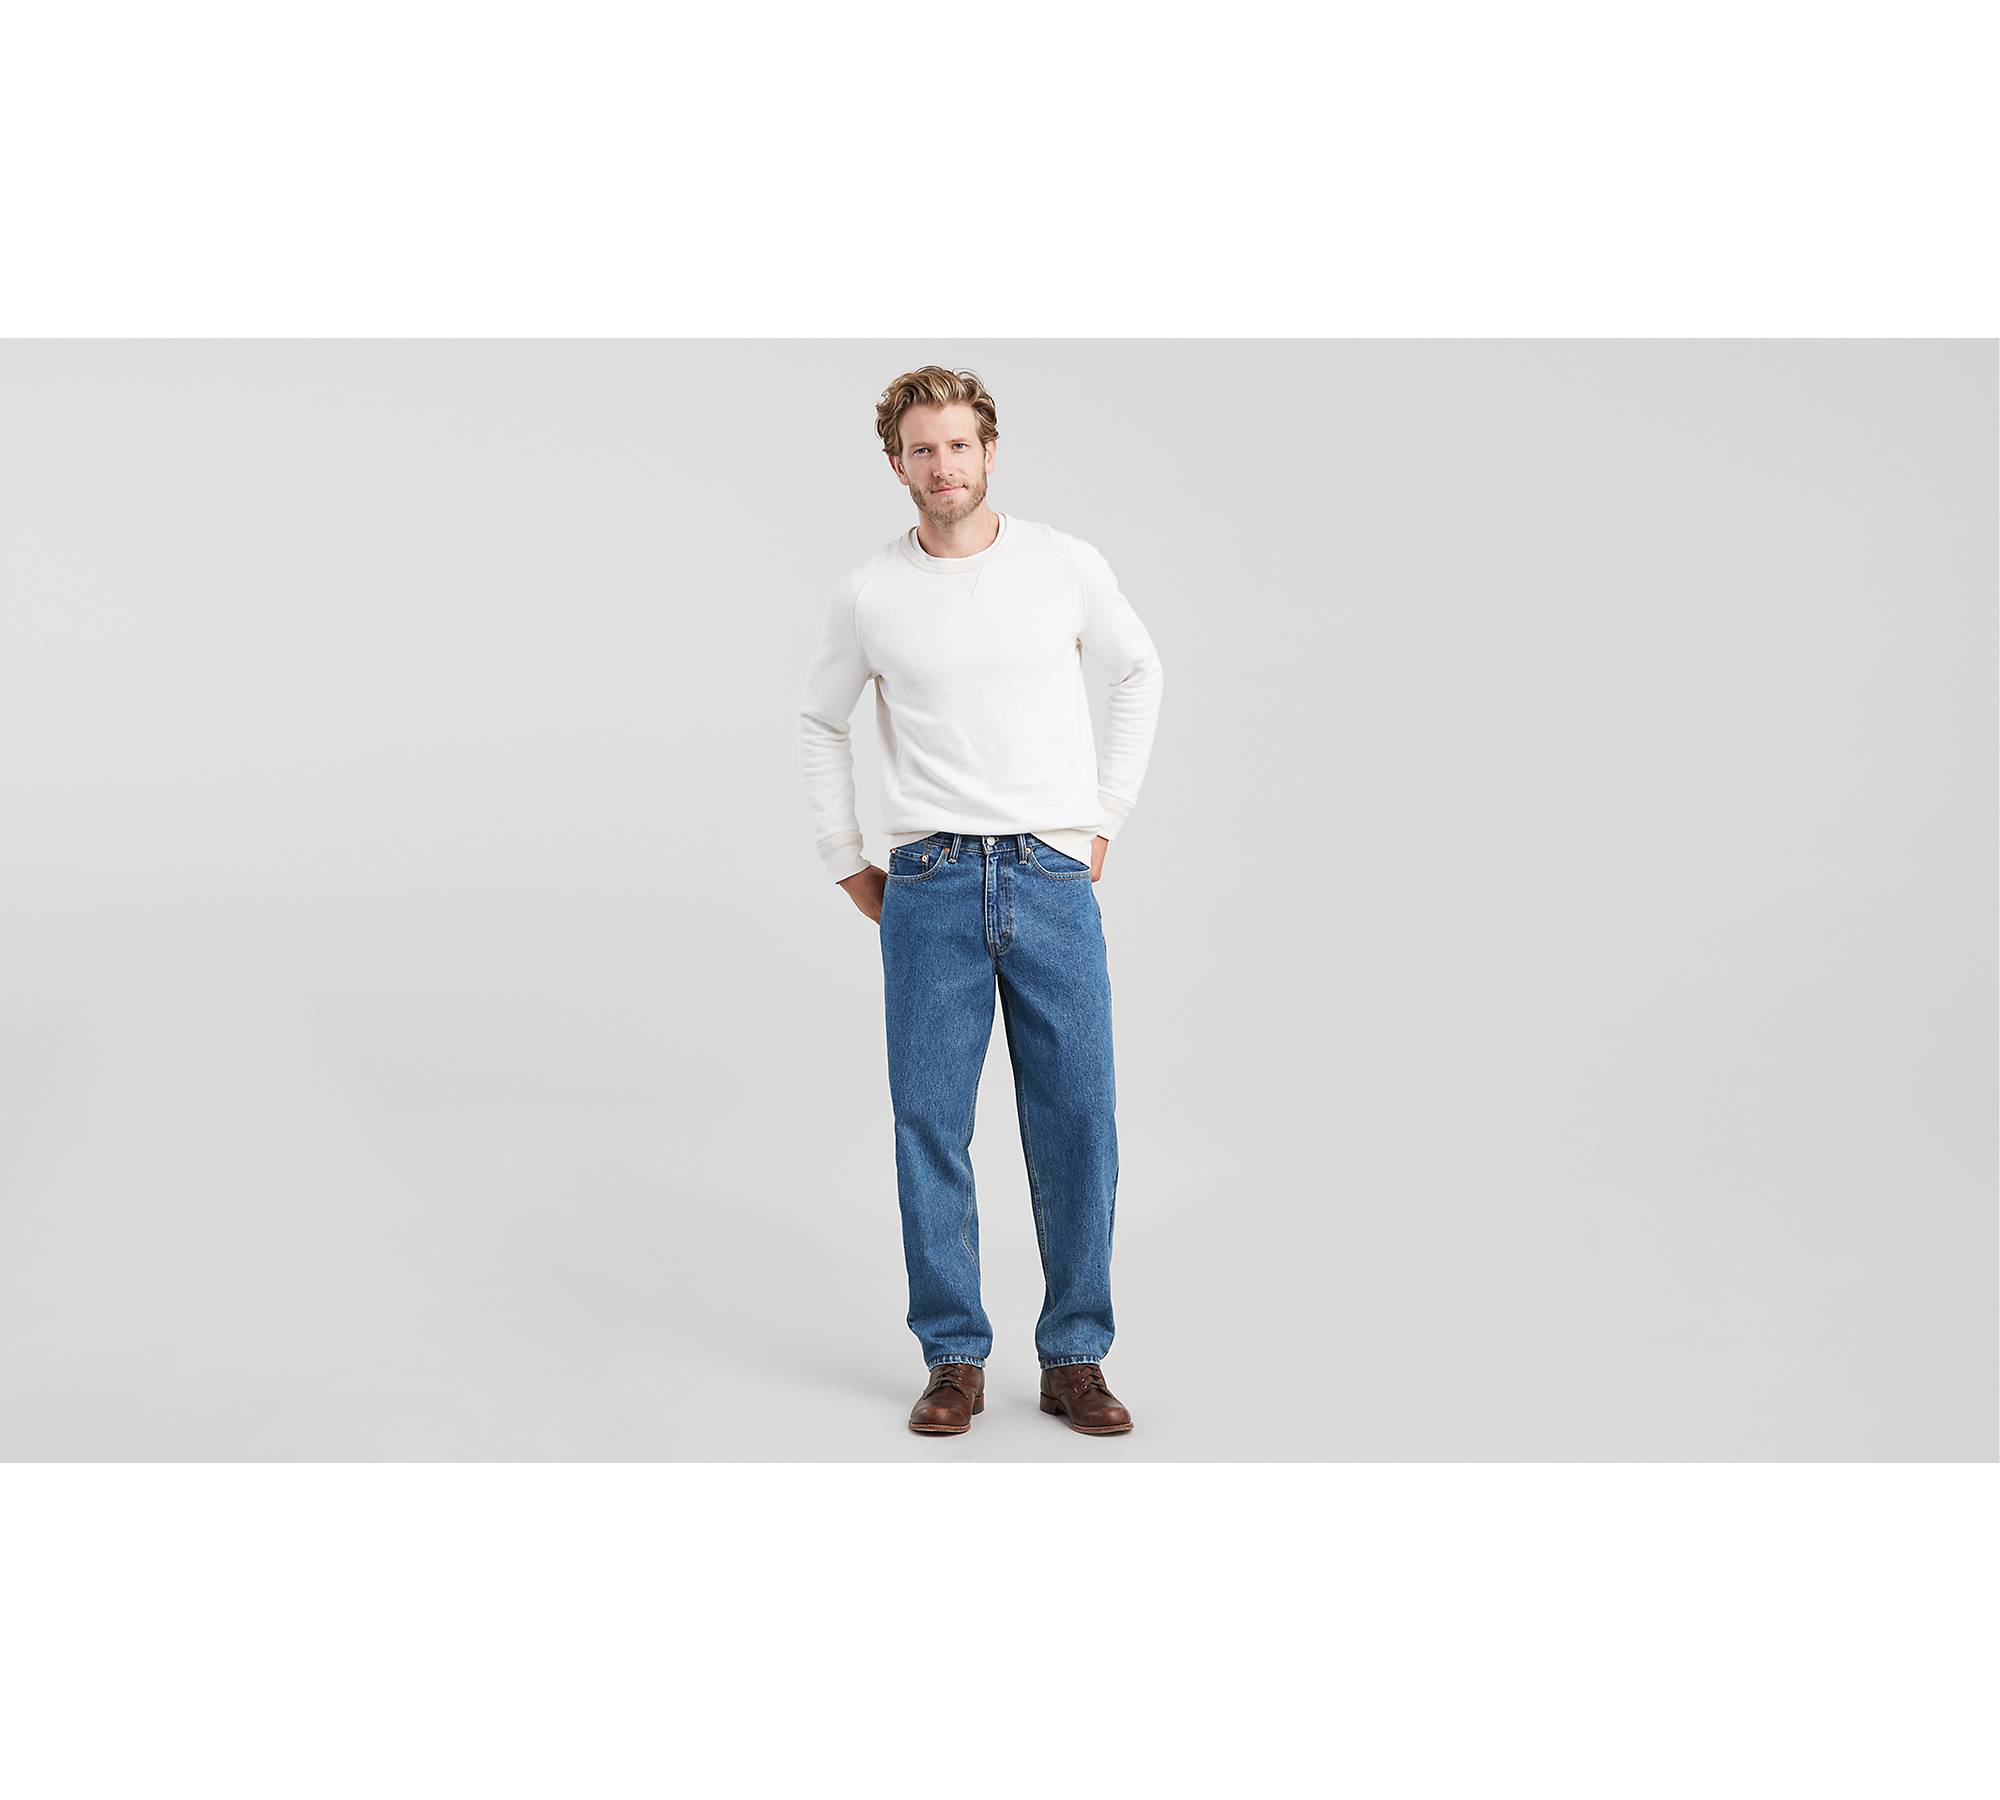 tilgivet bekræfte modbydeligt 560™ Comfort Fit Men's Jeans - Medium Wash | Levi's® US